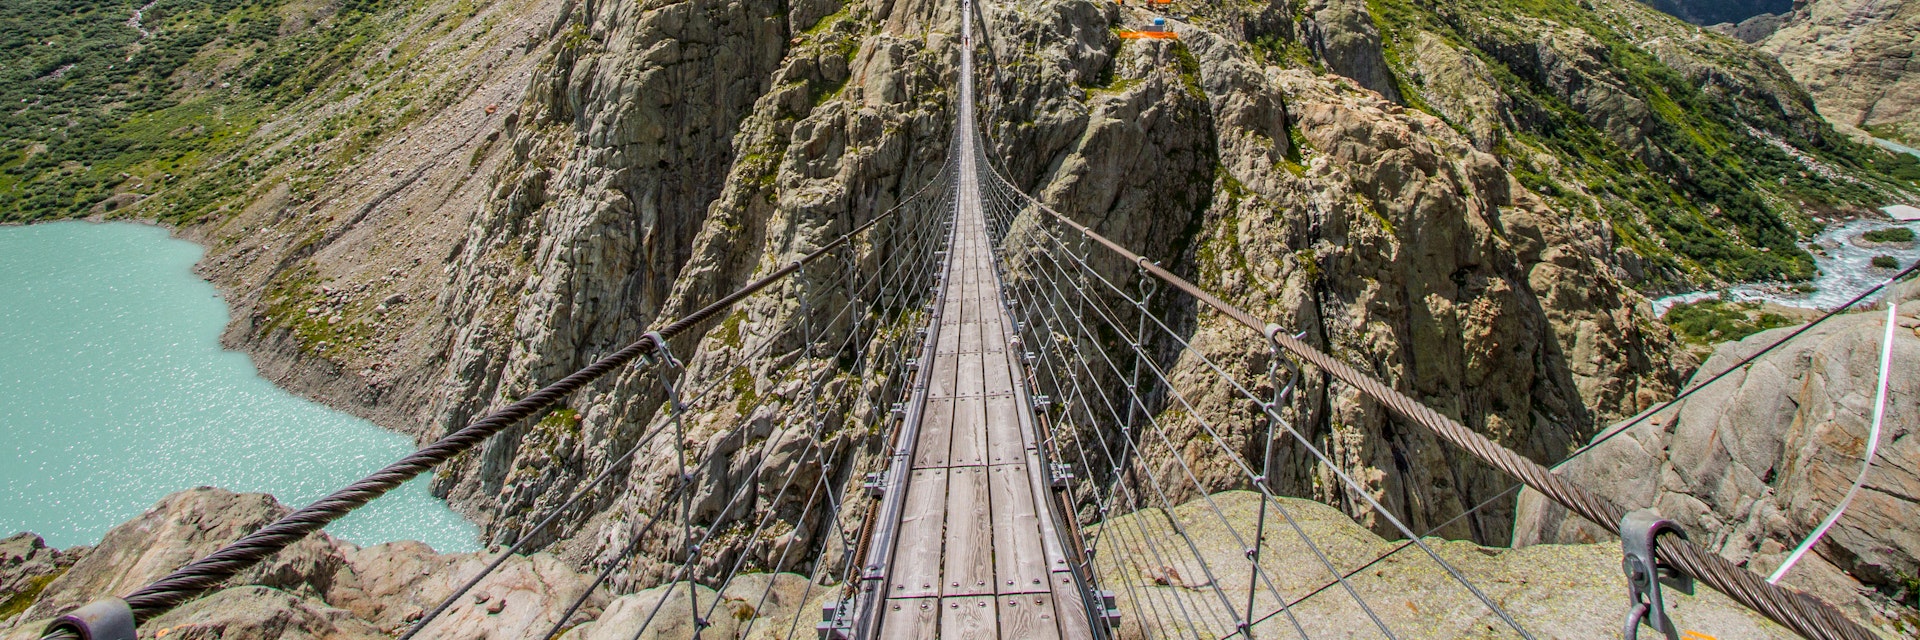 Trift Hanging Bridge